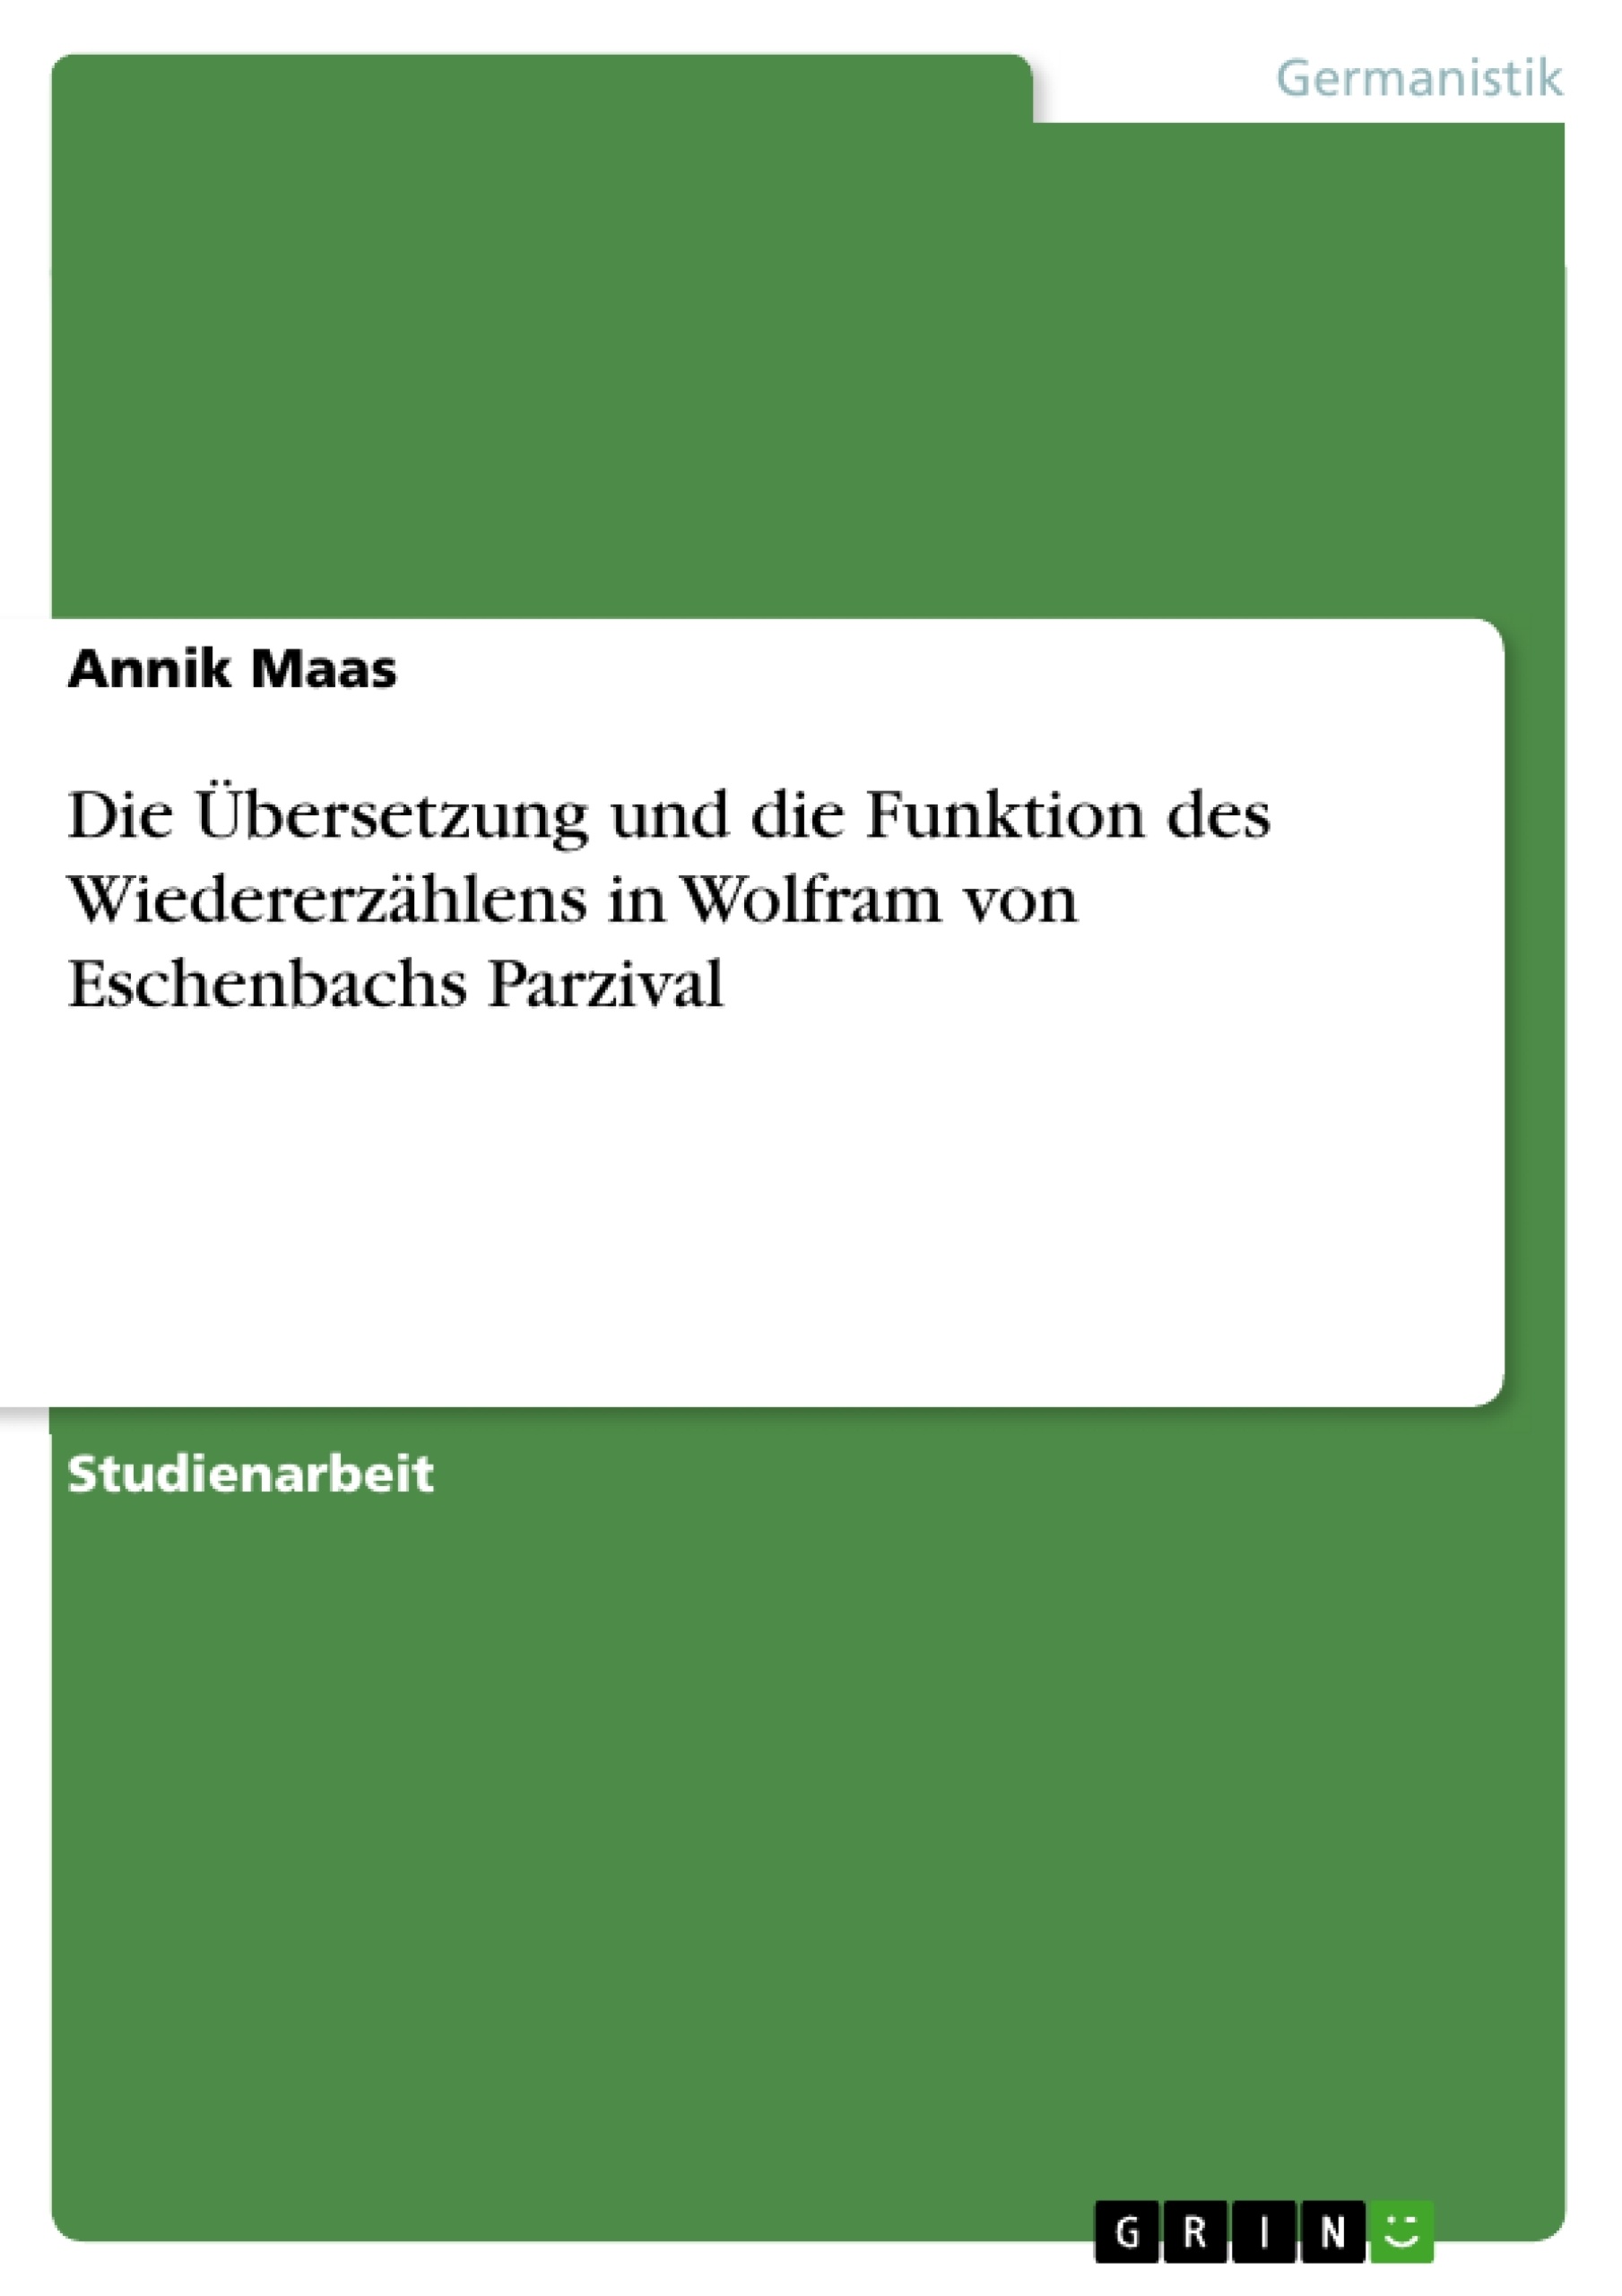 Titre: Die Übersetzung und die Funktion des Wiedererzählens in Wolfram von Eschenbachs Parzival